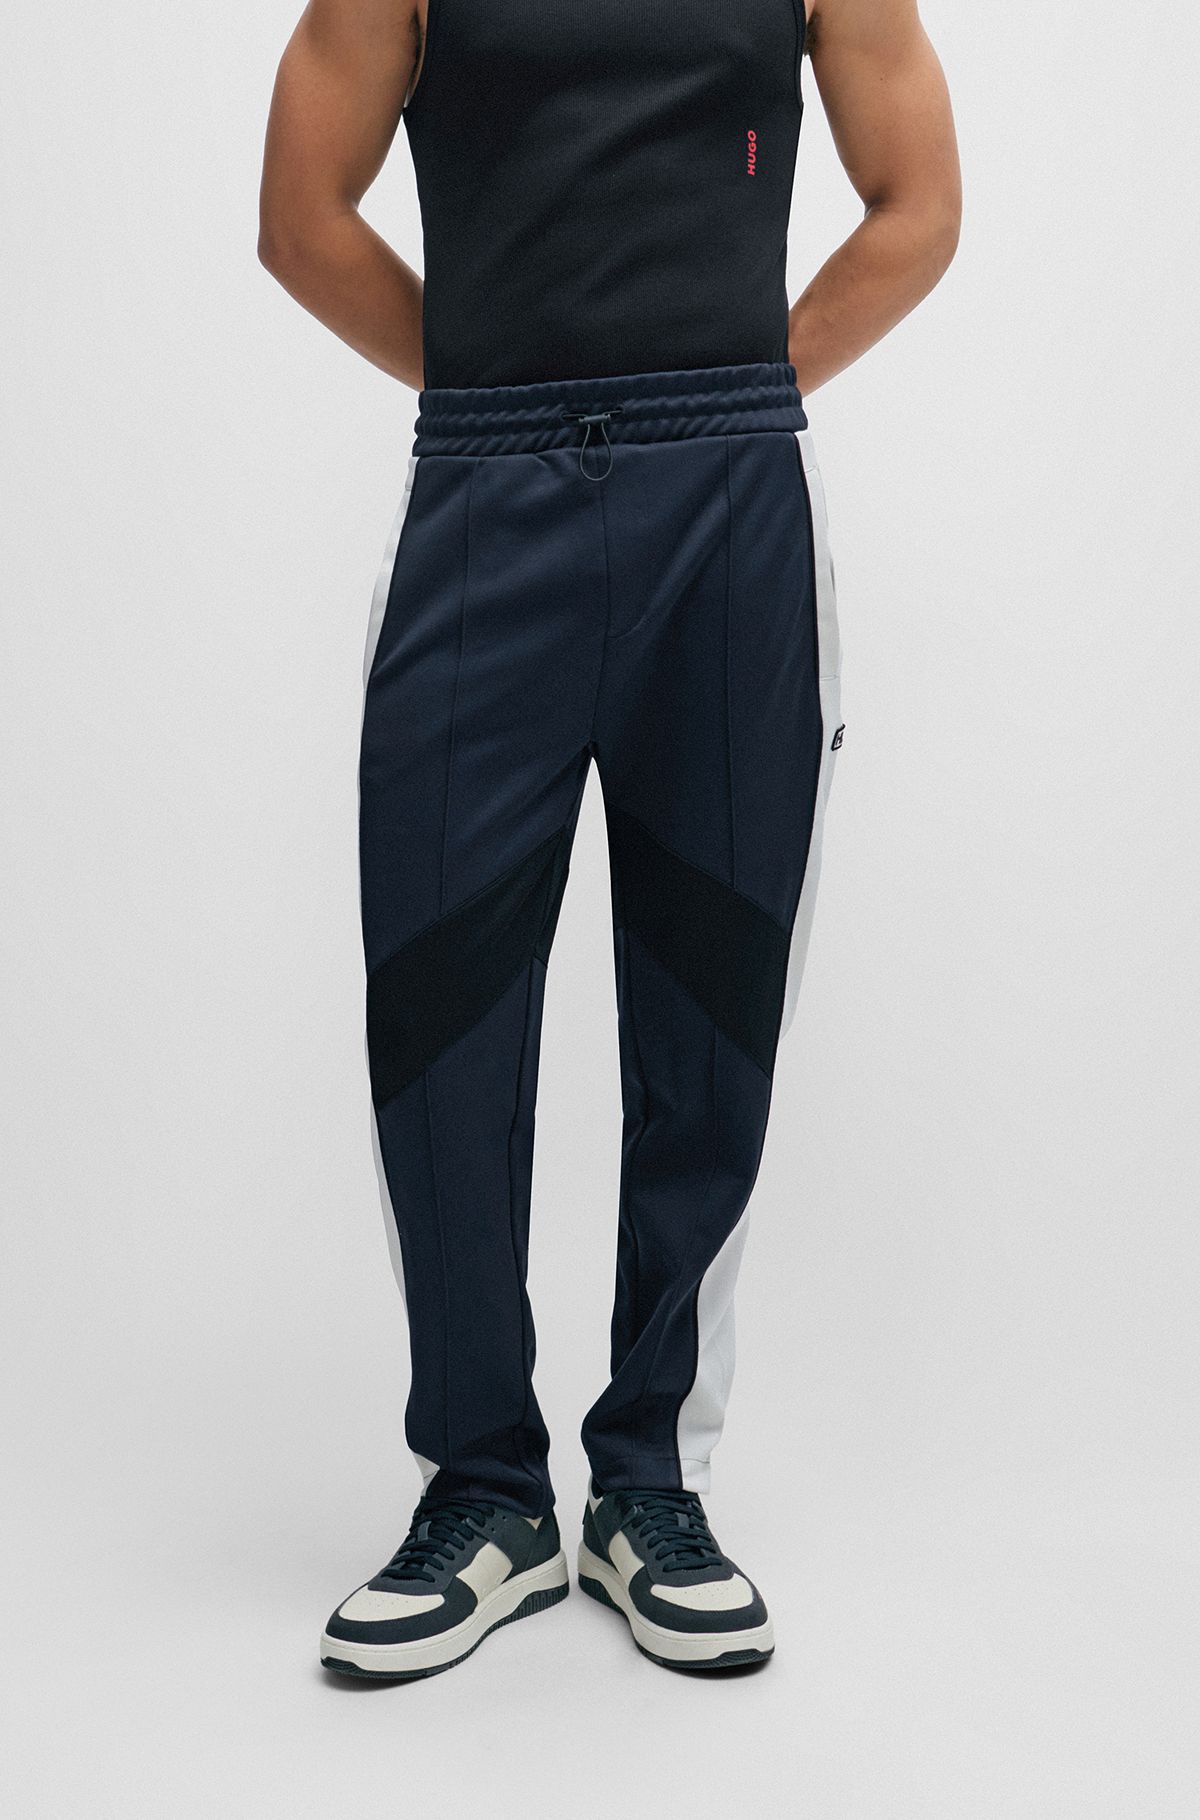 Pantalones de chándal relaxed fit con bloques de color, Azul oscuro